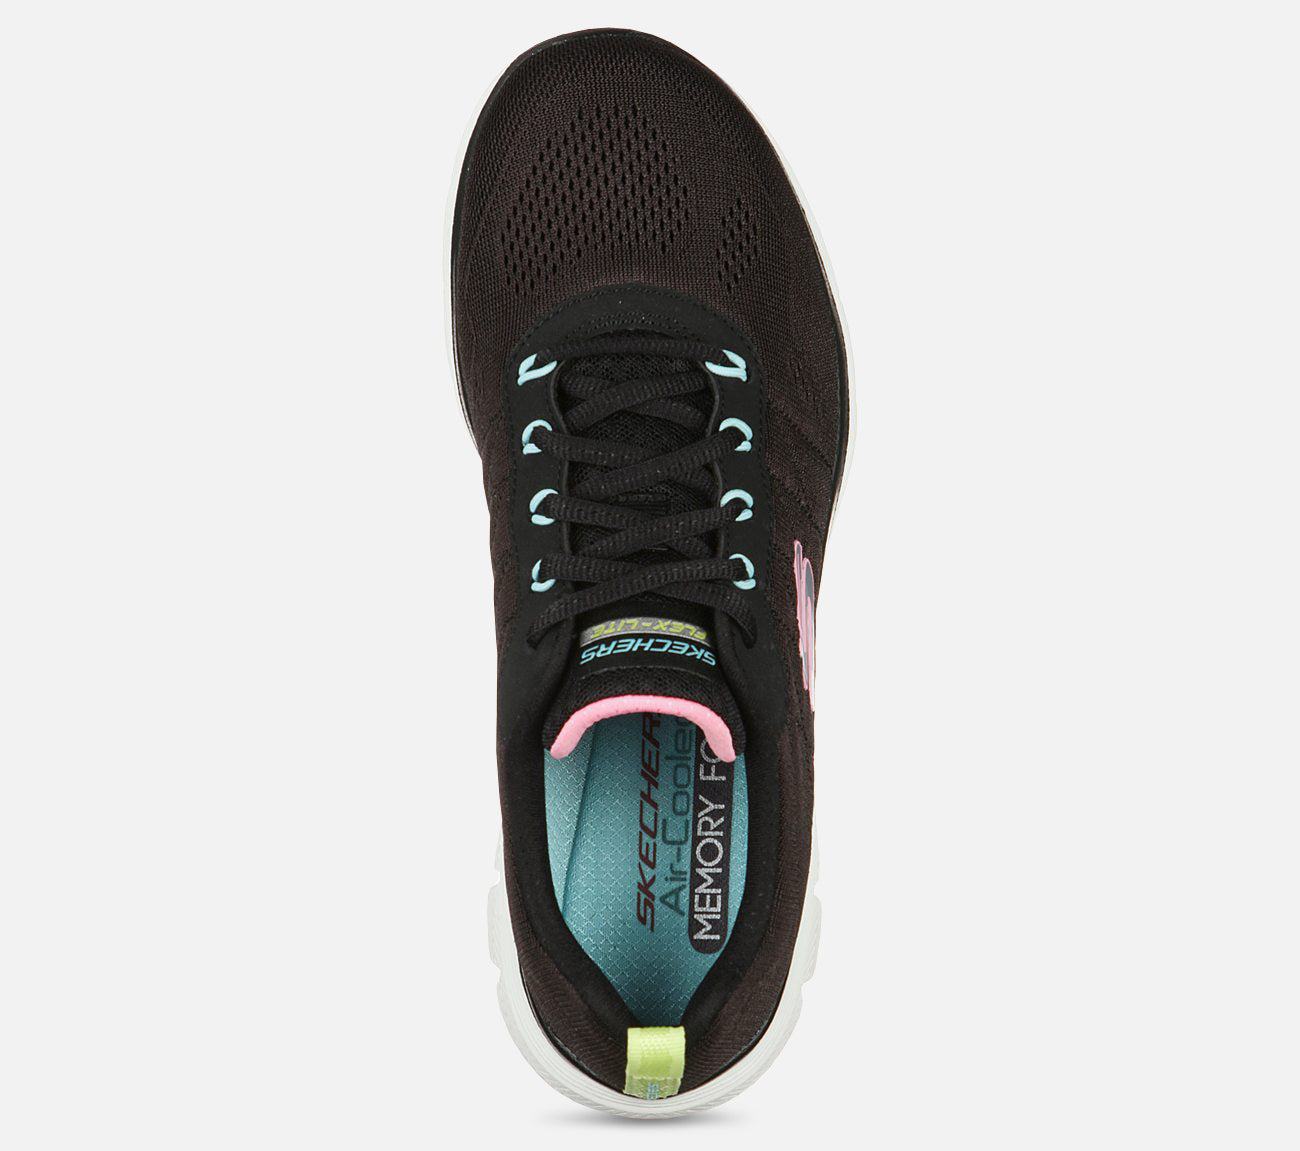 Flex Appeal 4.0 - Walk Wonderful Shoe Skechers